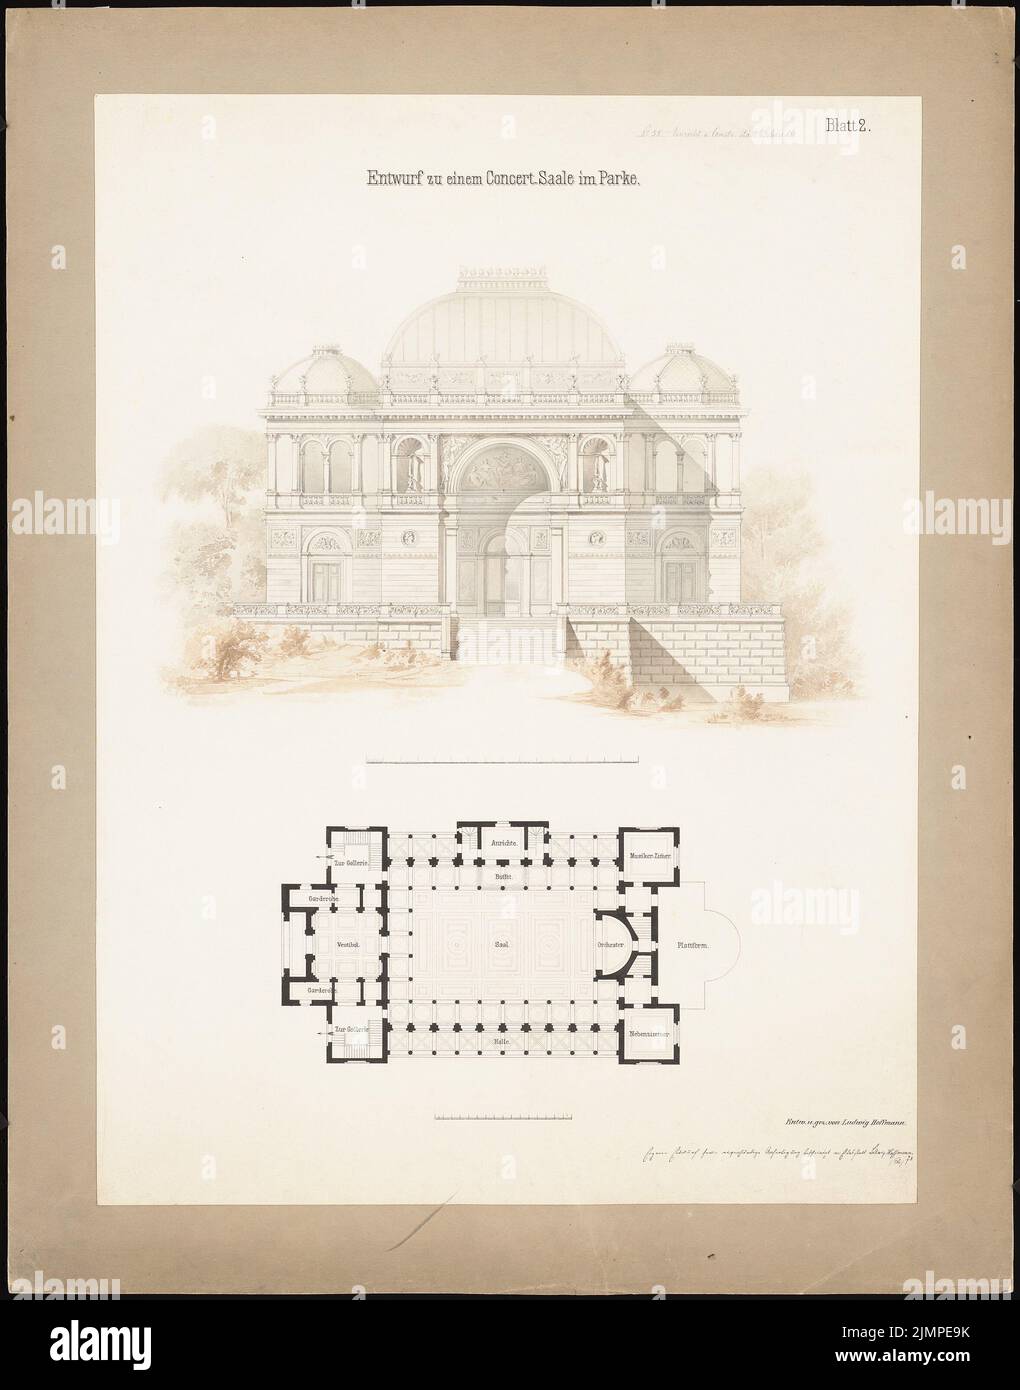 Hoffmann Ludwig (1852-1932), salle de concert dans le parc (02,1878): Vue latérale, plan d'étage par exemple. Tusche aquarelle sur la boîte, 76,6 x 60,1 cm (y compris les bords de balayage) Hoffmann Ludwig (1852-1932): Konzertsaal im Park Banque D'Images